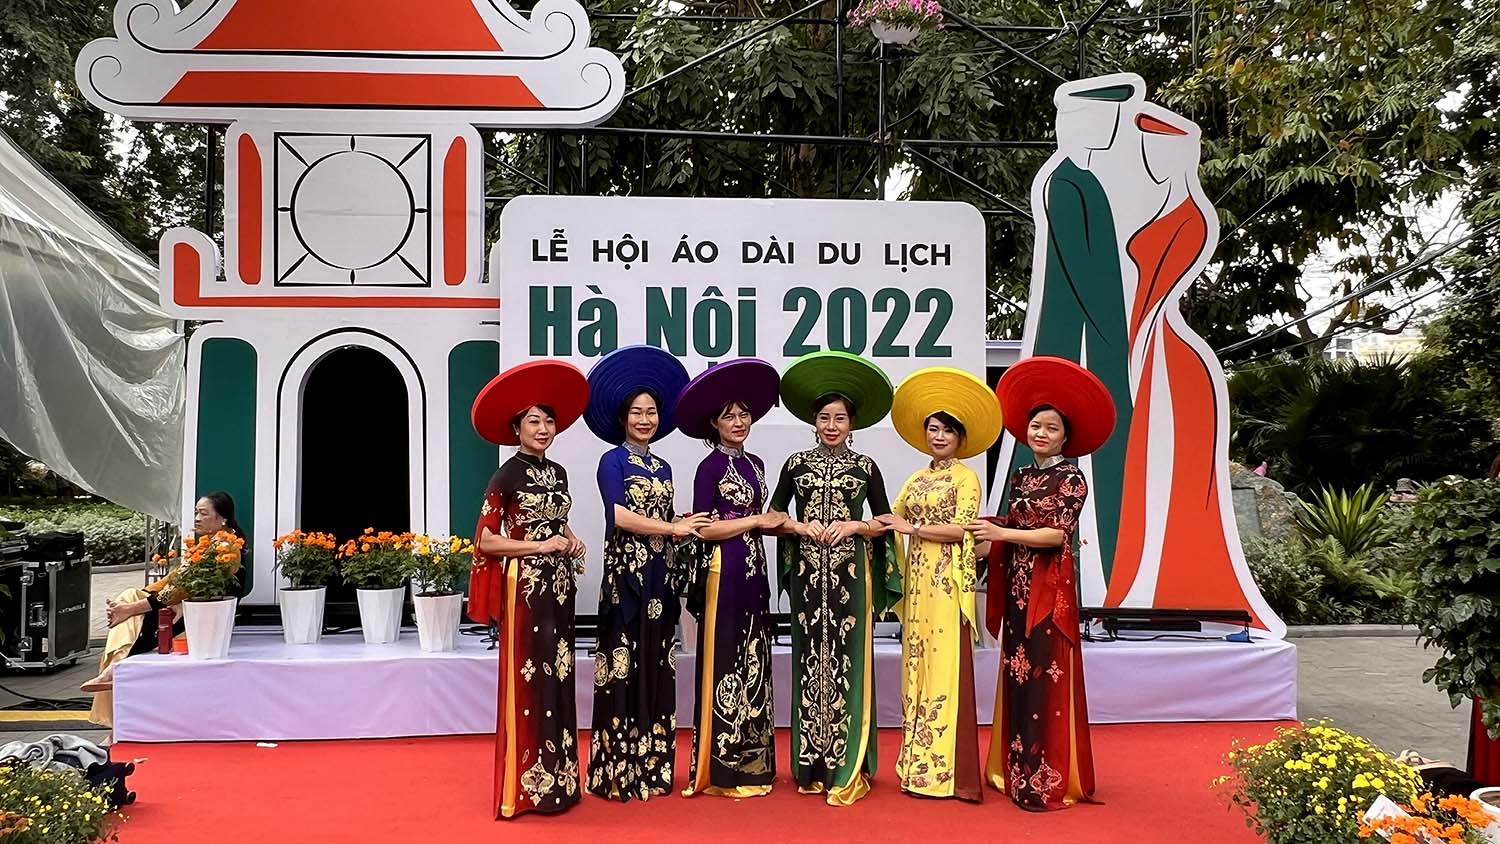 Lễ hội áo dài du lịch Hà Nội 2022 nhằm chuyển tải thông điệp du lịch Việt Nam nói chung và du lịch Hà Nội nói riêng, đưa hình ảnh chiếc áo dài từ “đại sứ văn hóa” dần trở thành “đại sứ du lịch”, sản phẩm du lịch đặc trưng của Hà Nội, Việt Nam.